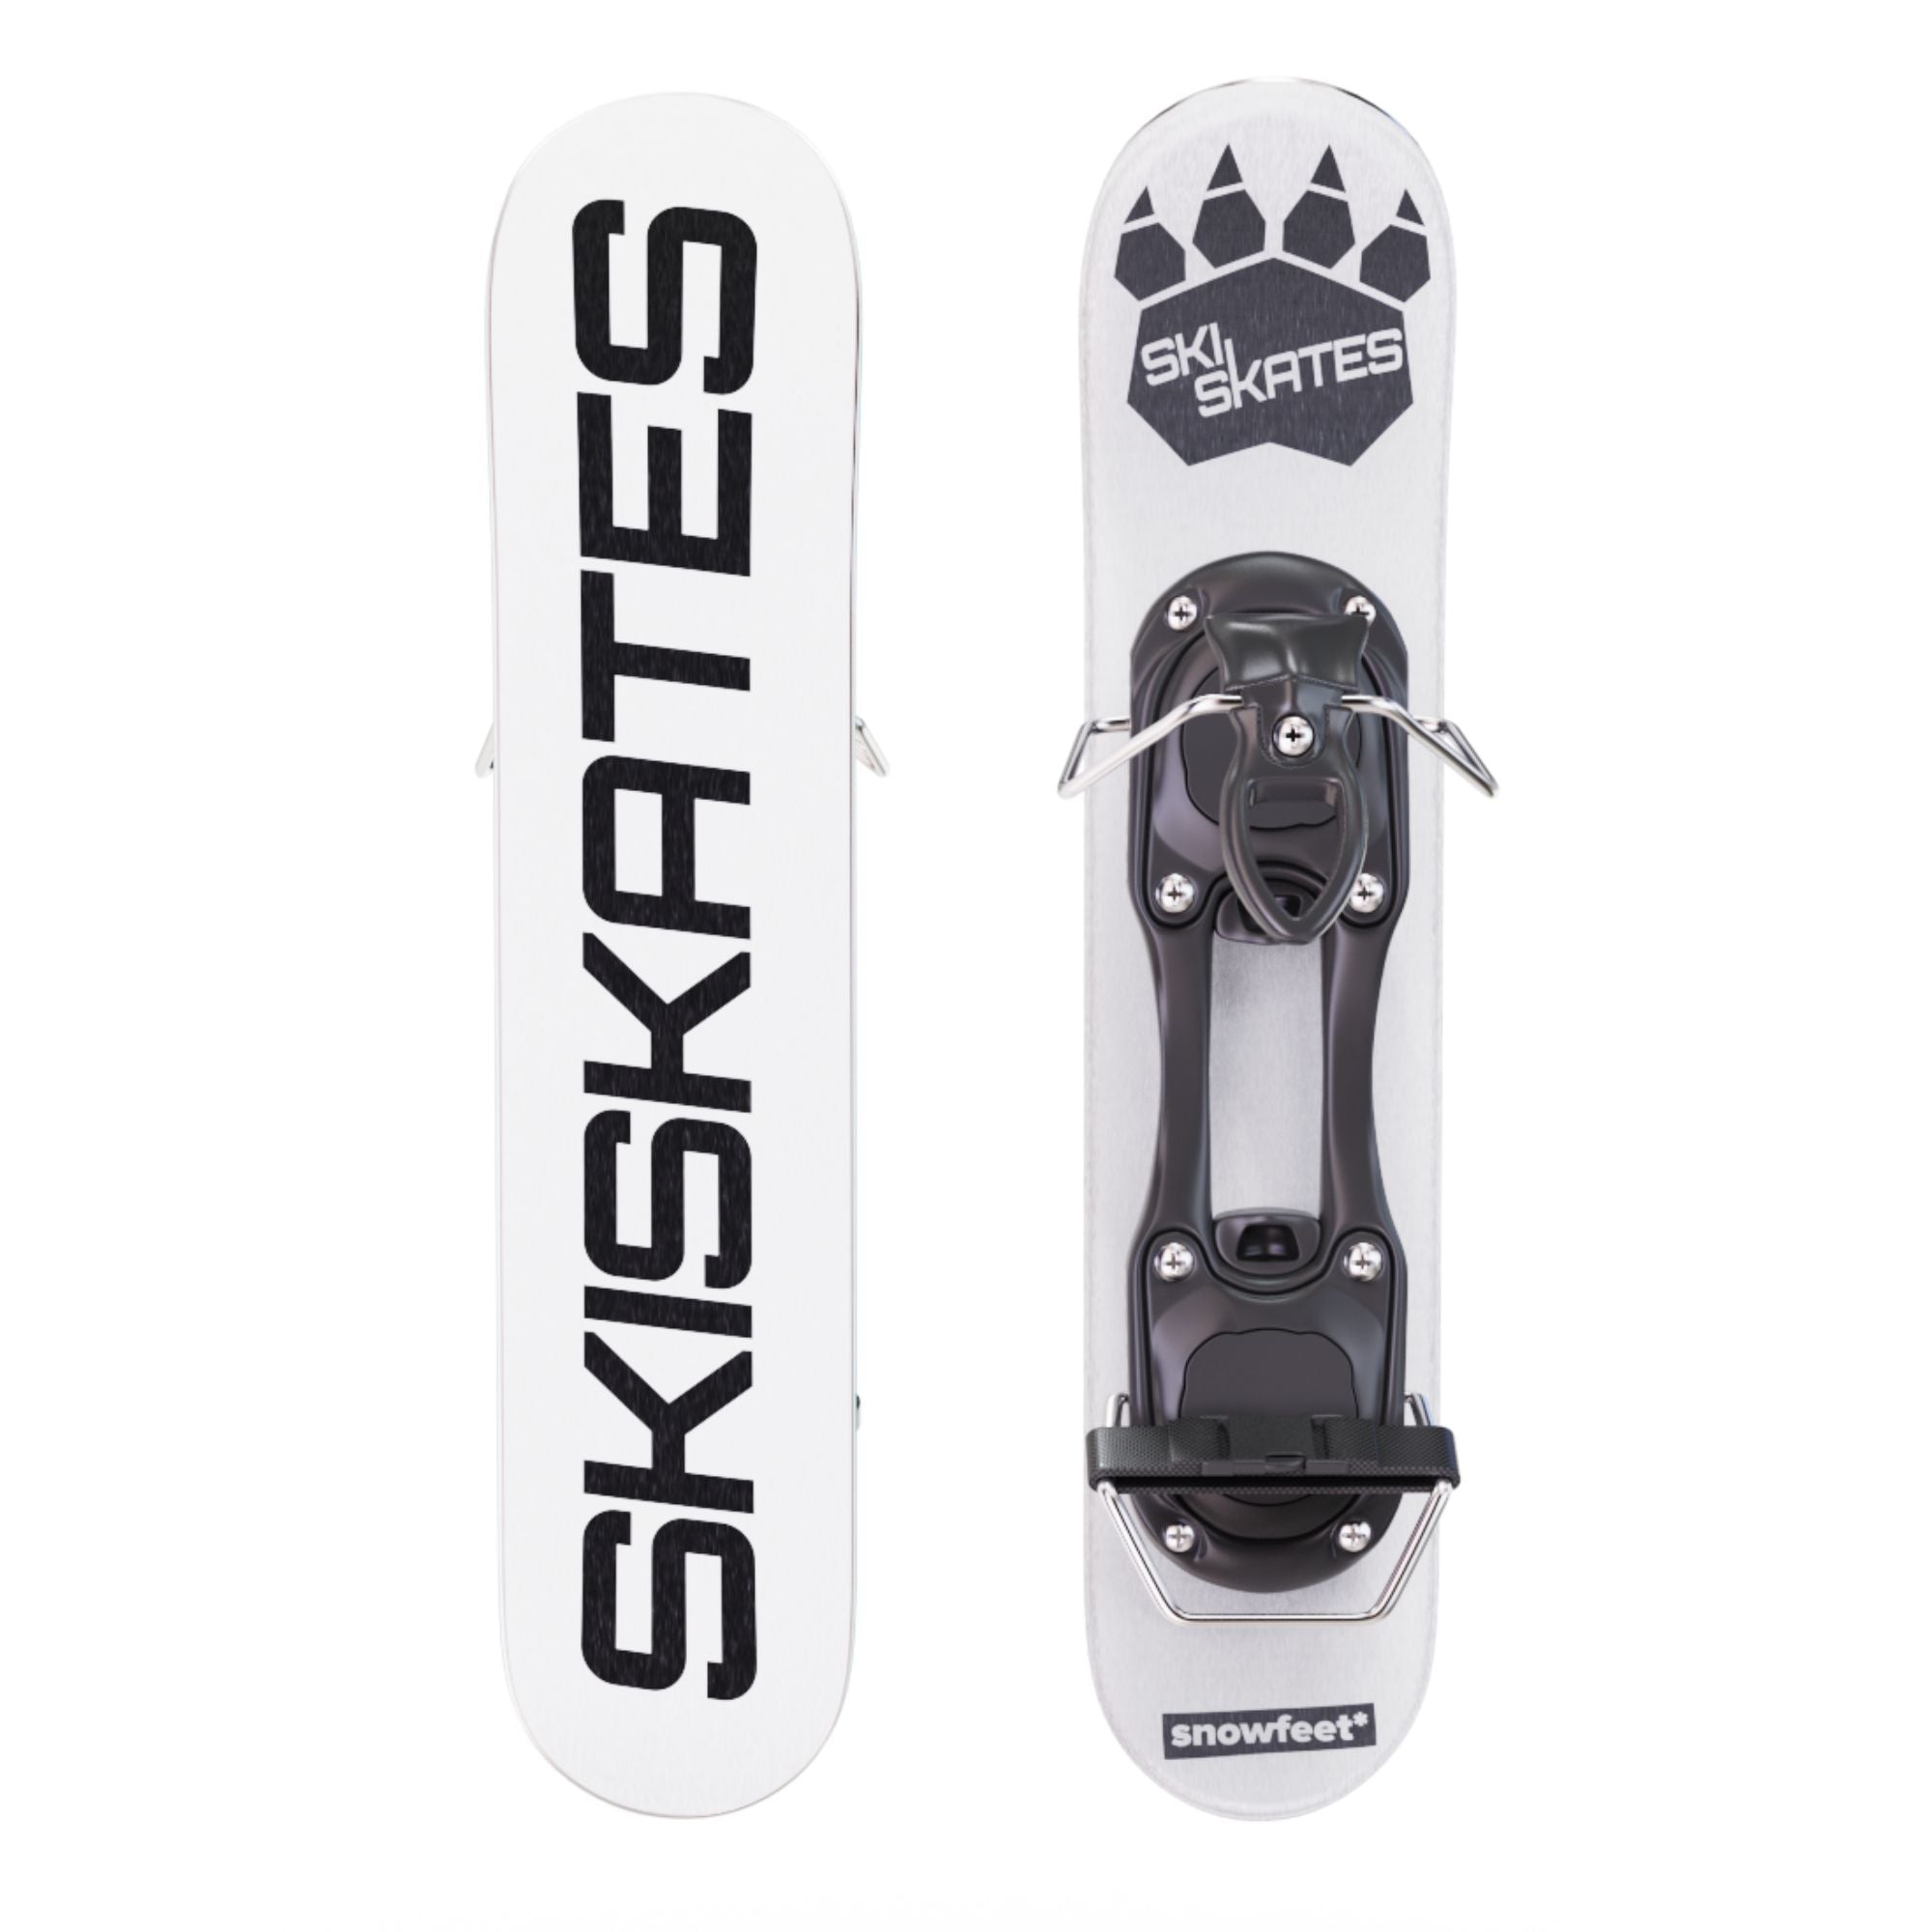 skiskates スキースケートウィンタースポーツ - スキー